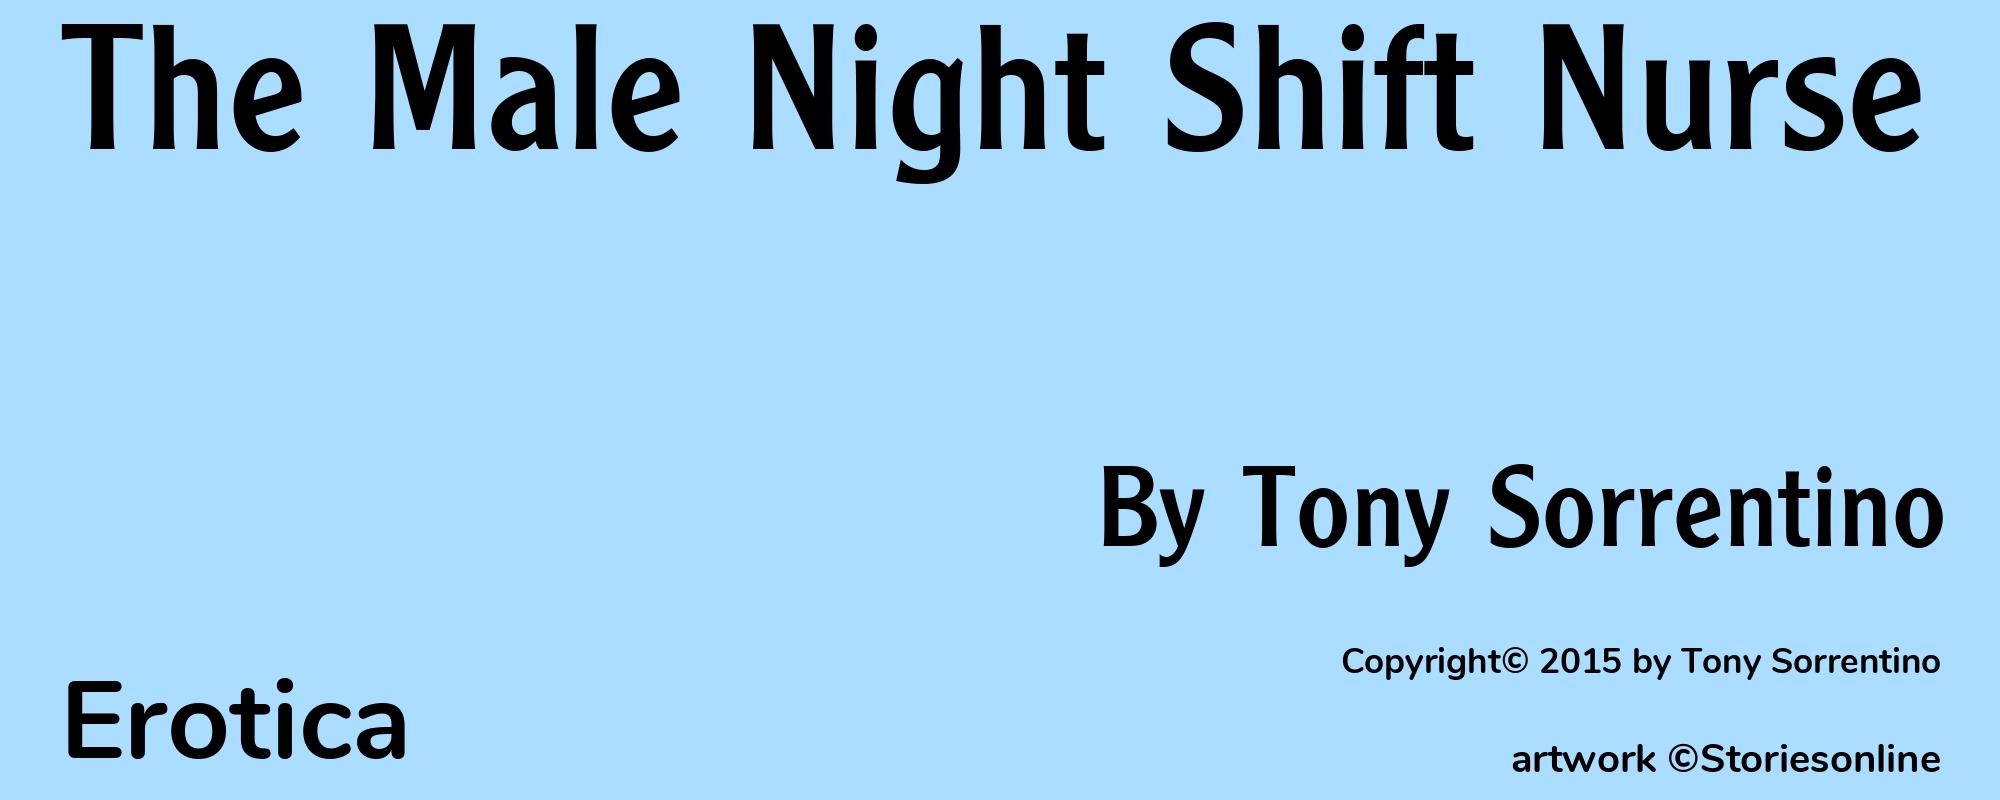 The Male Night Shift Nurse - Cover